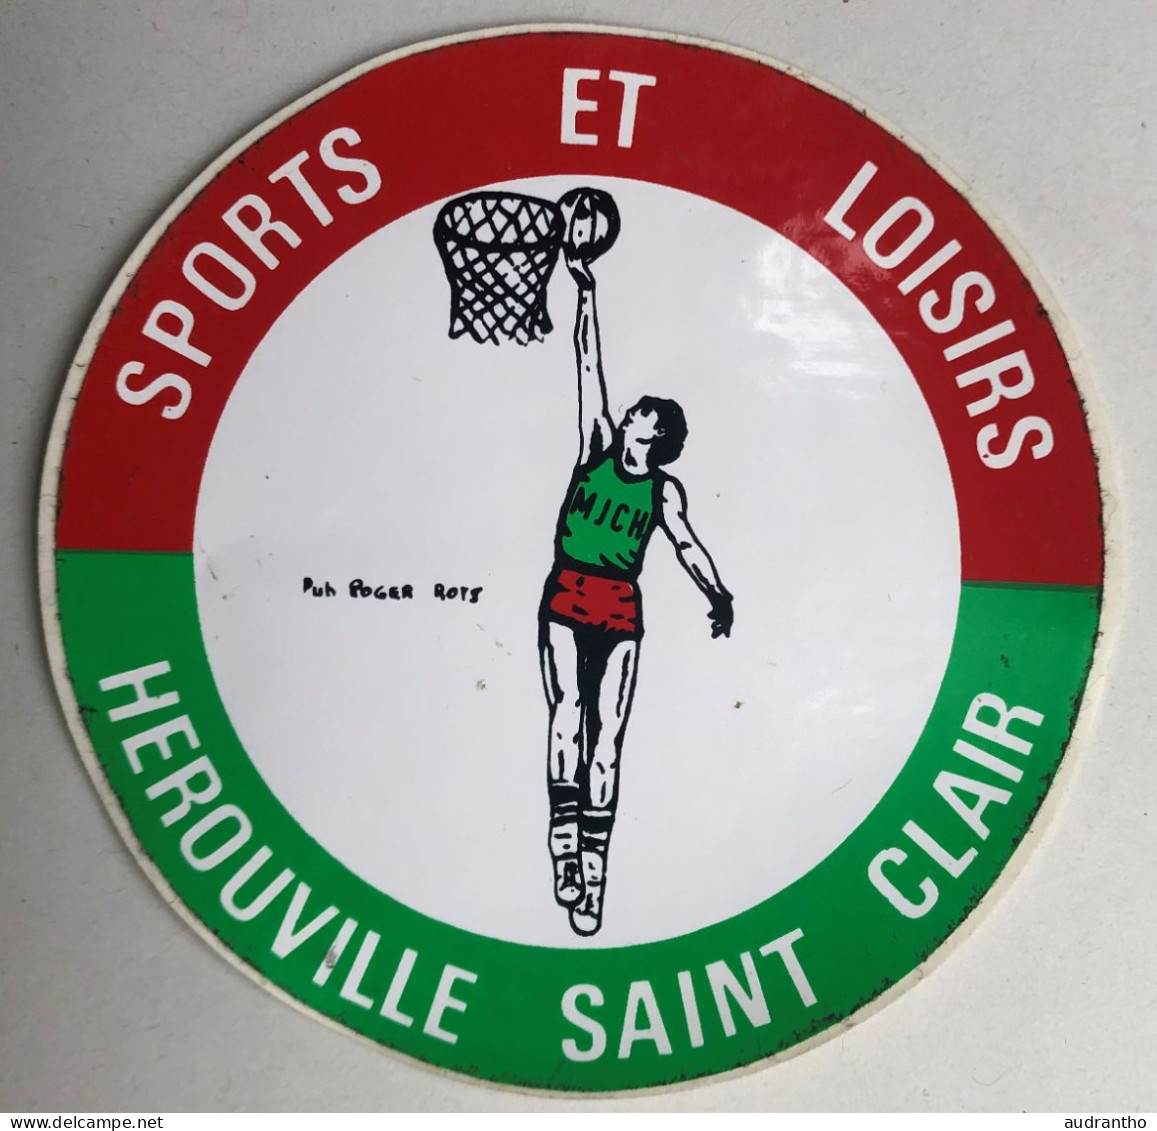 Autocollant Vintage Basketball - Club Herouville Saint Clair - Pub Roger Rots ? - Apparel, Souvenirs & Other